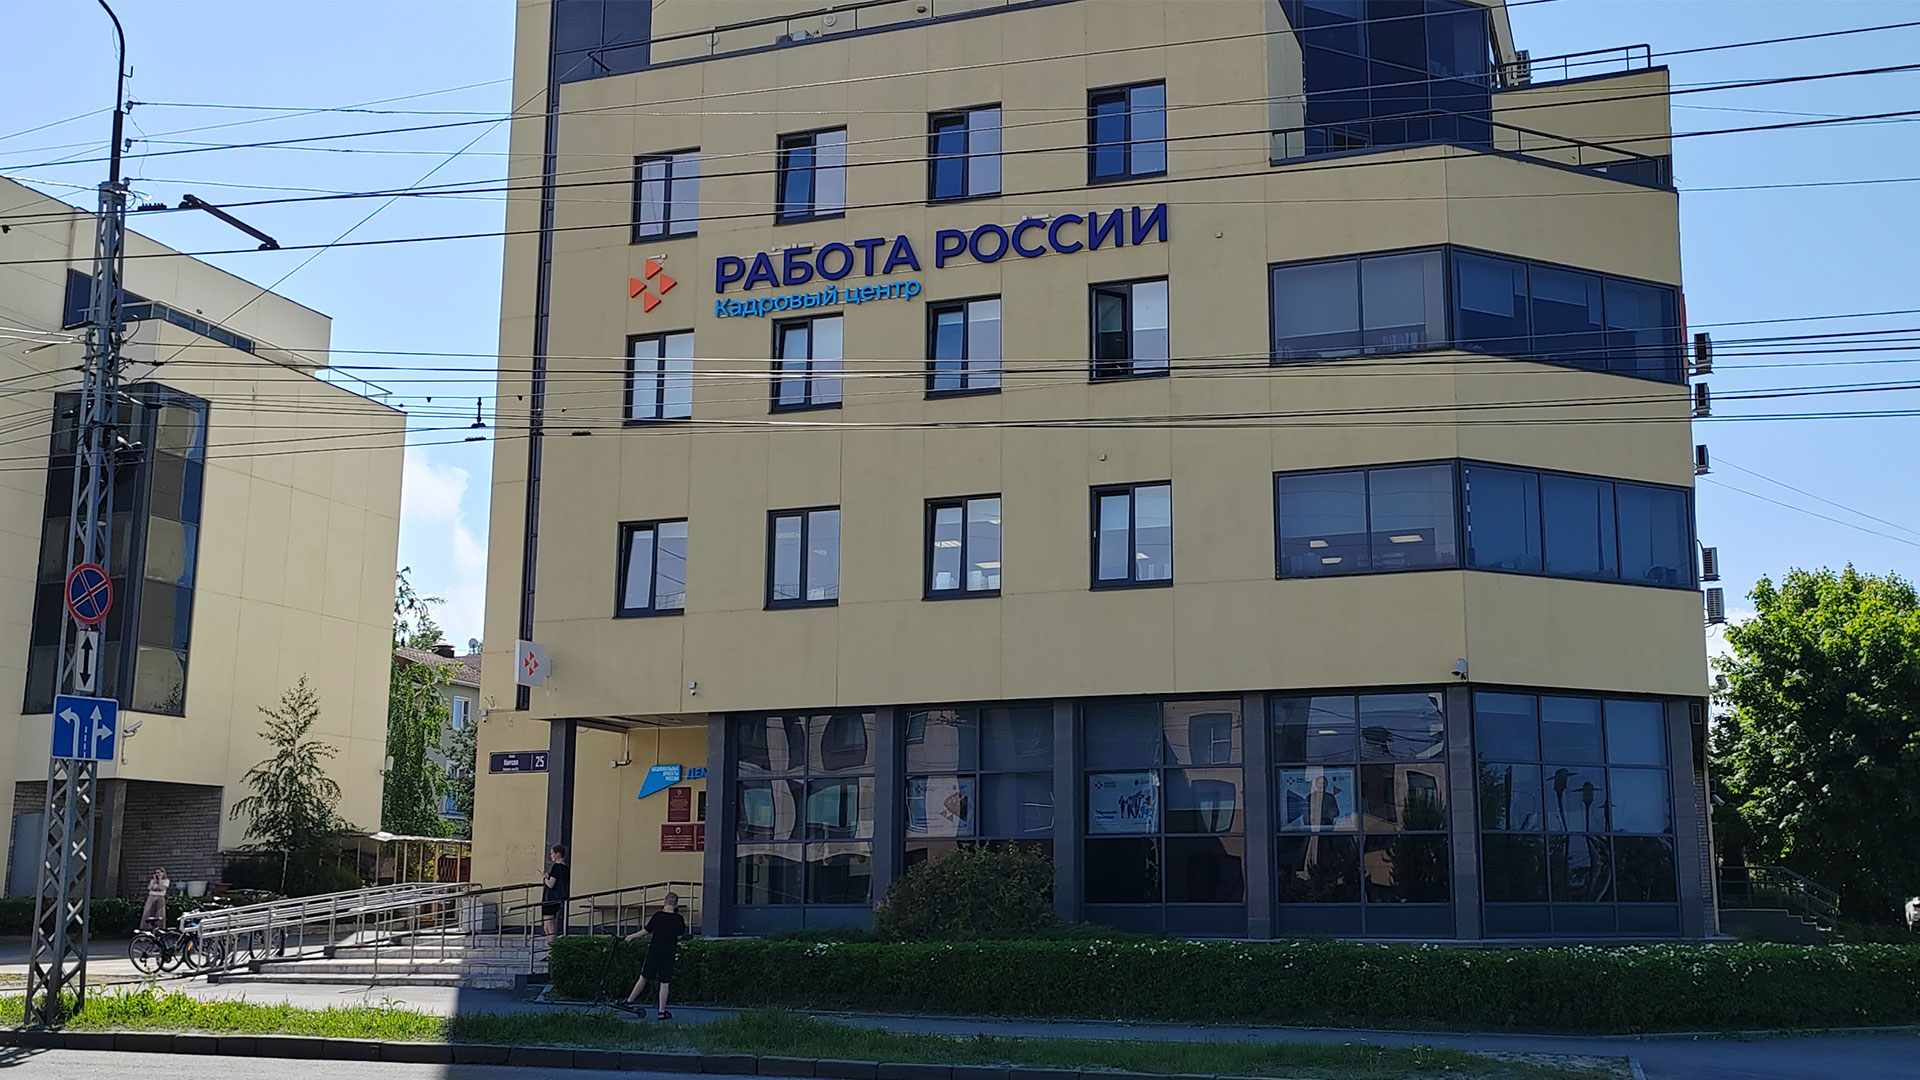 Административное здание с надписью Работа России